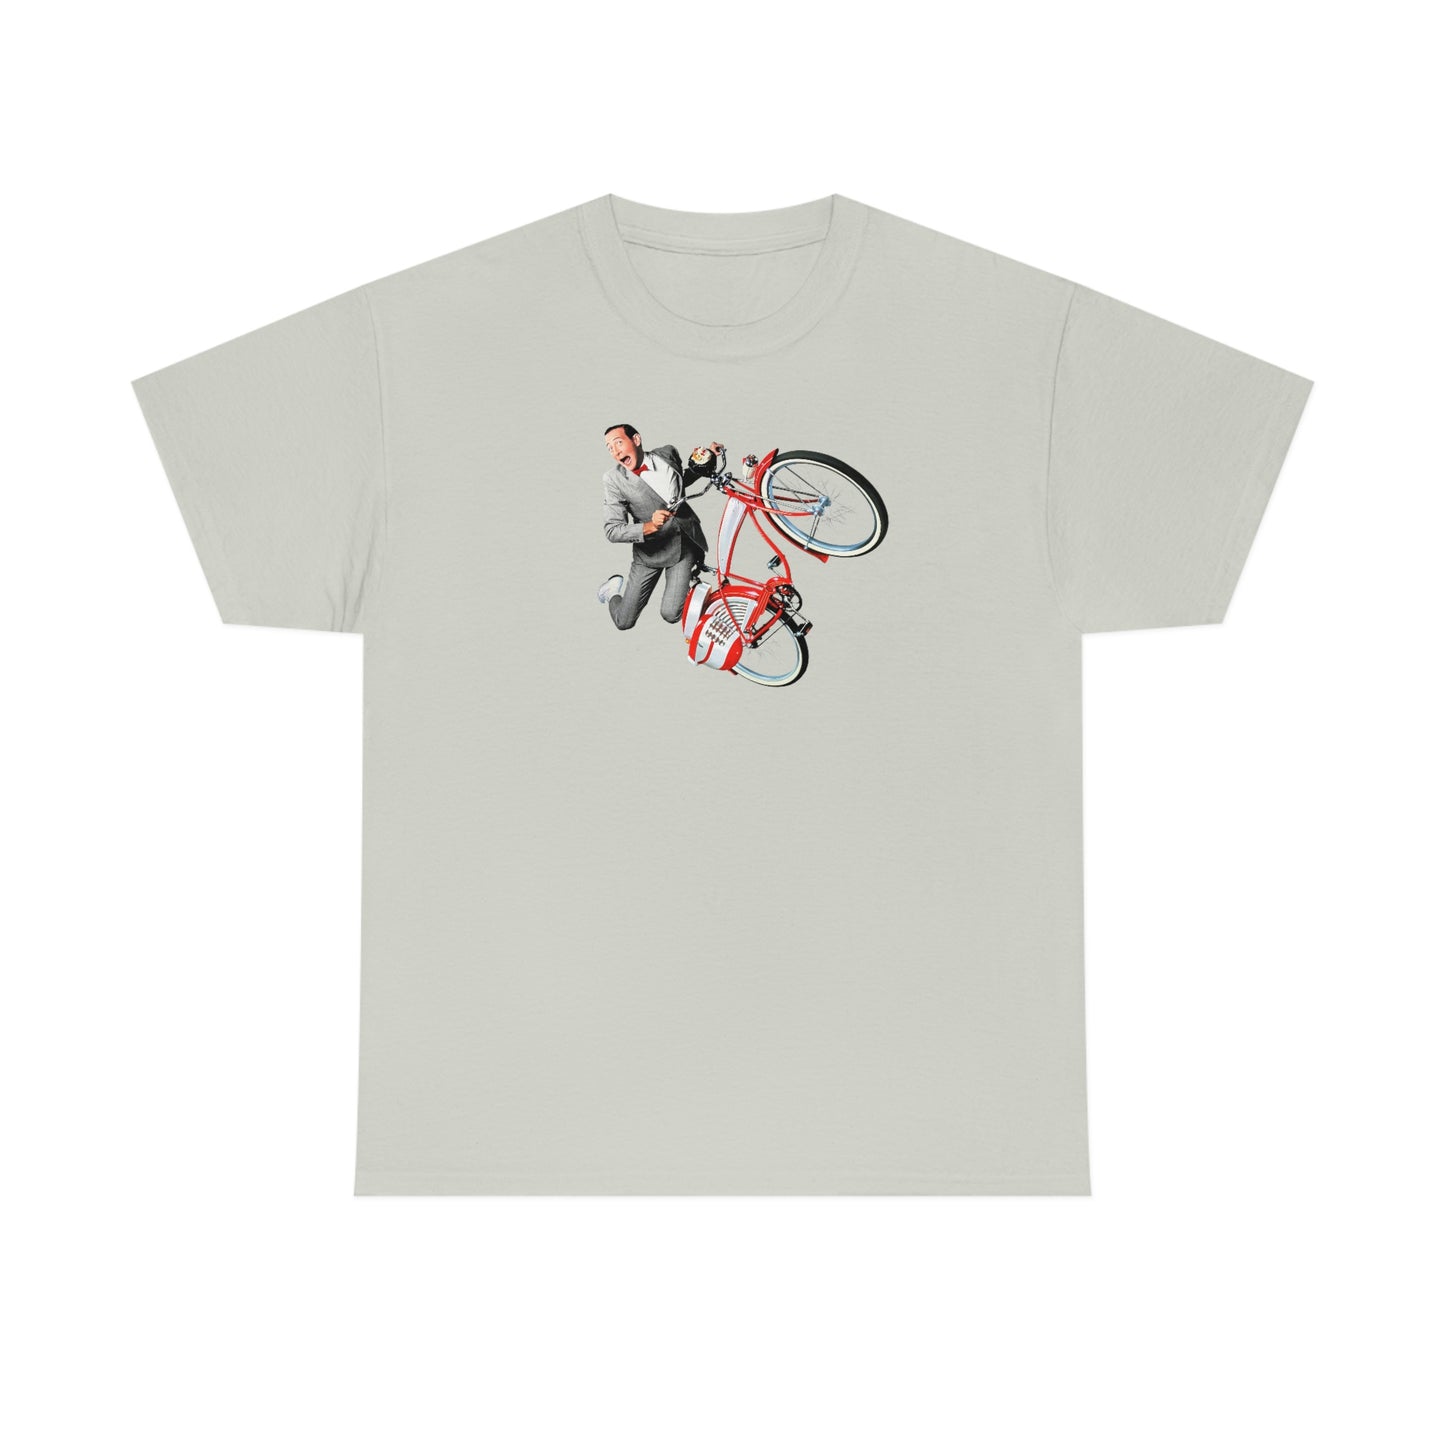 Pee-Wee Herman T-Shirt